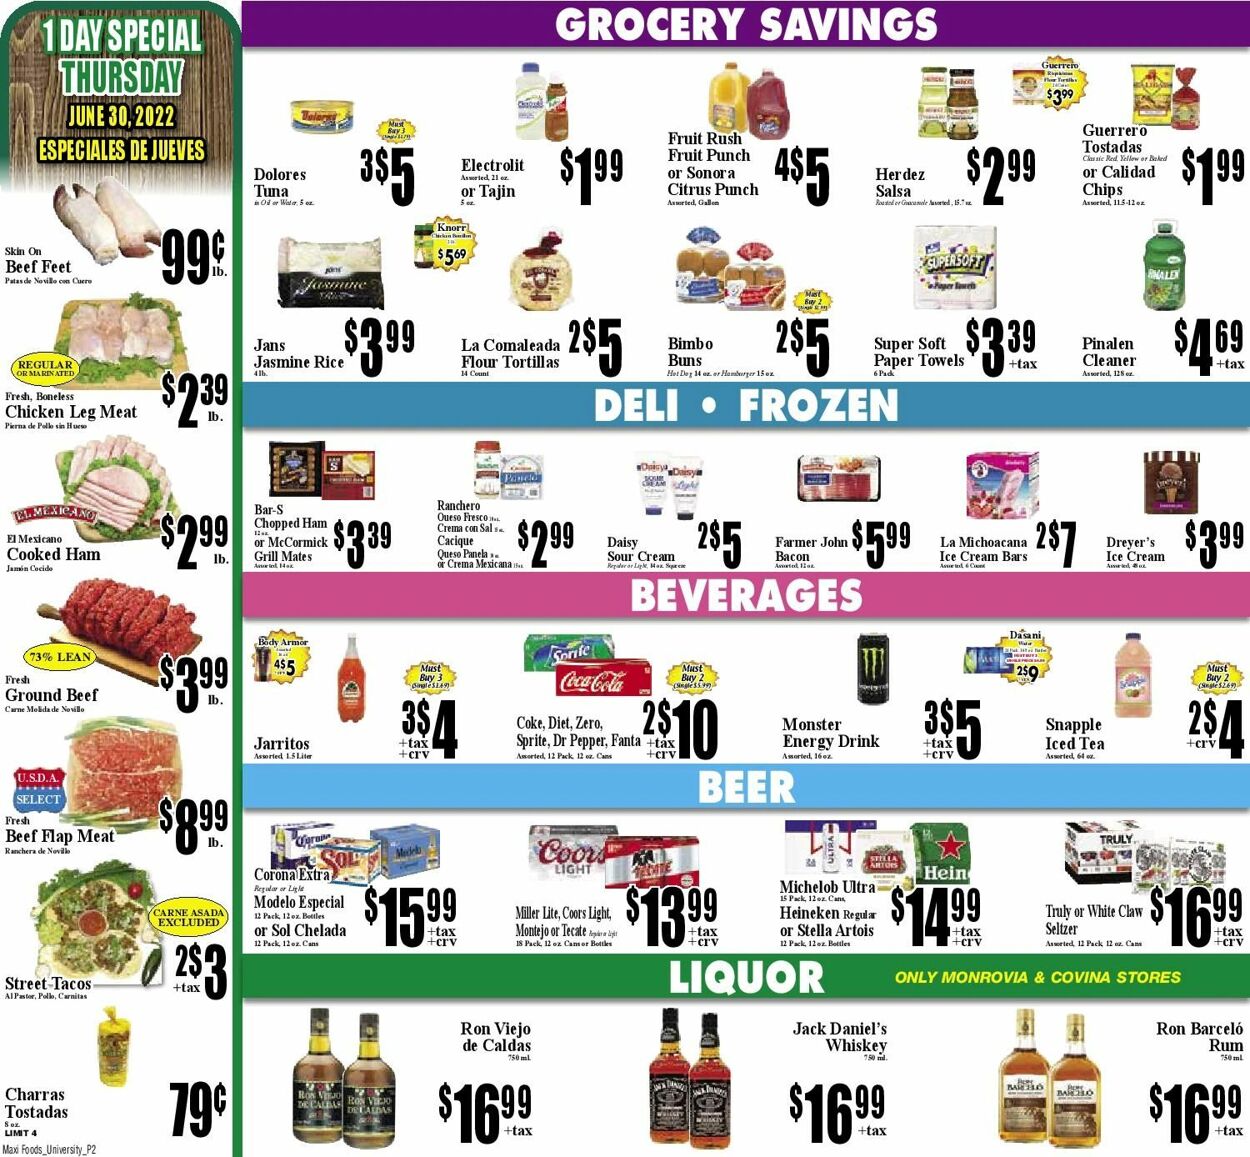 Weekly ad Maxi Foods 06/29/2022 - 07/05/2022